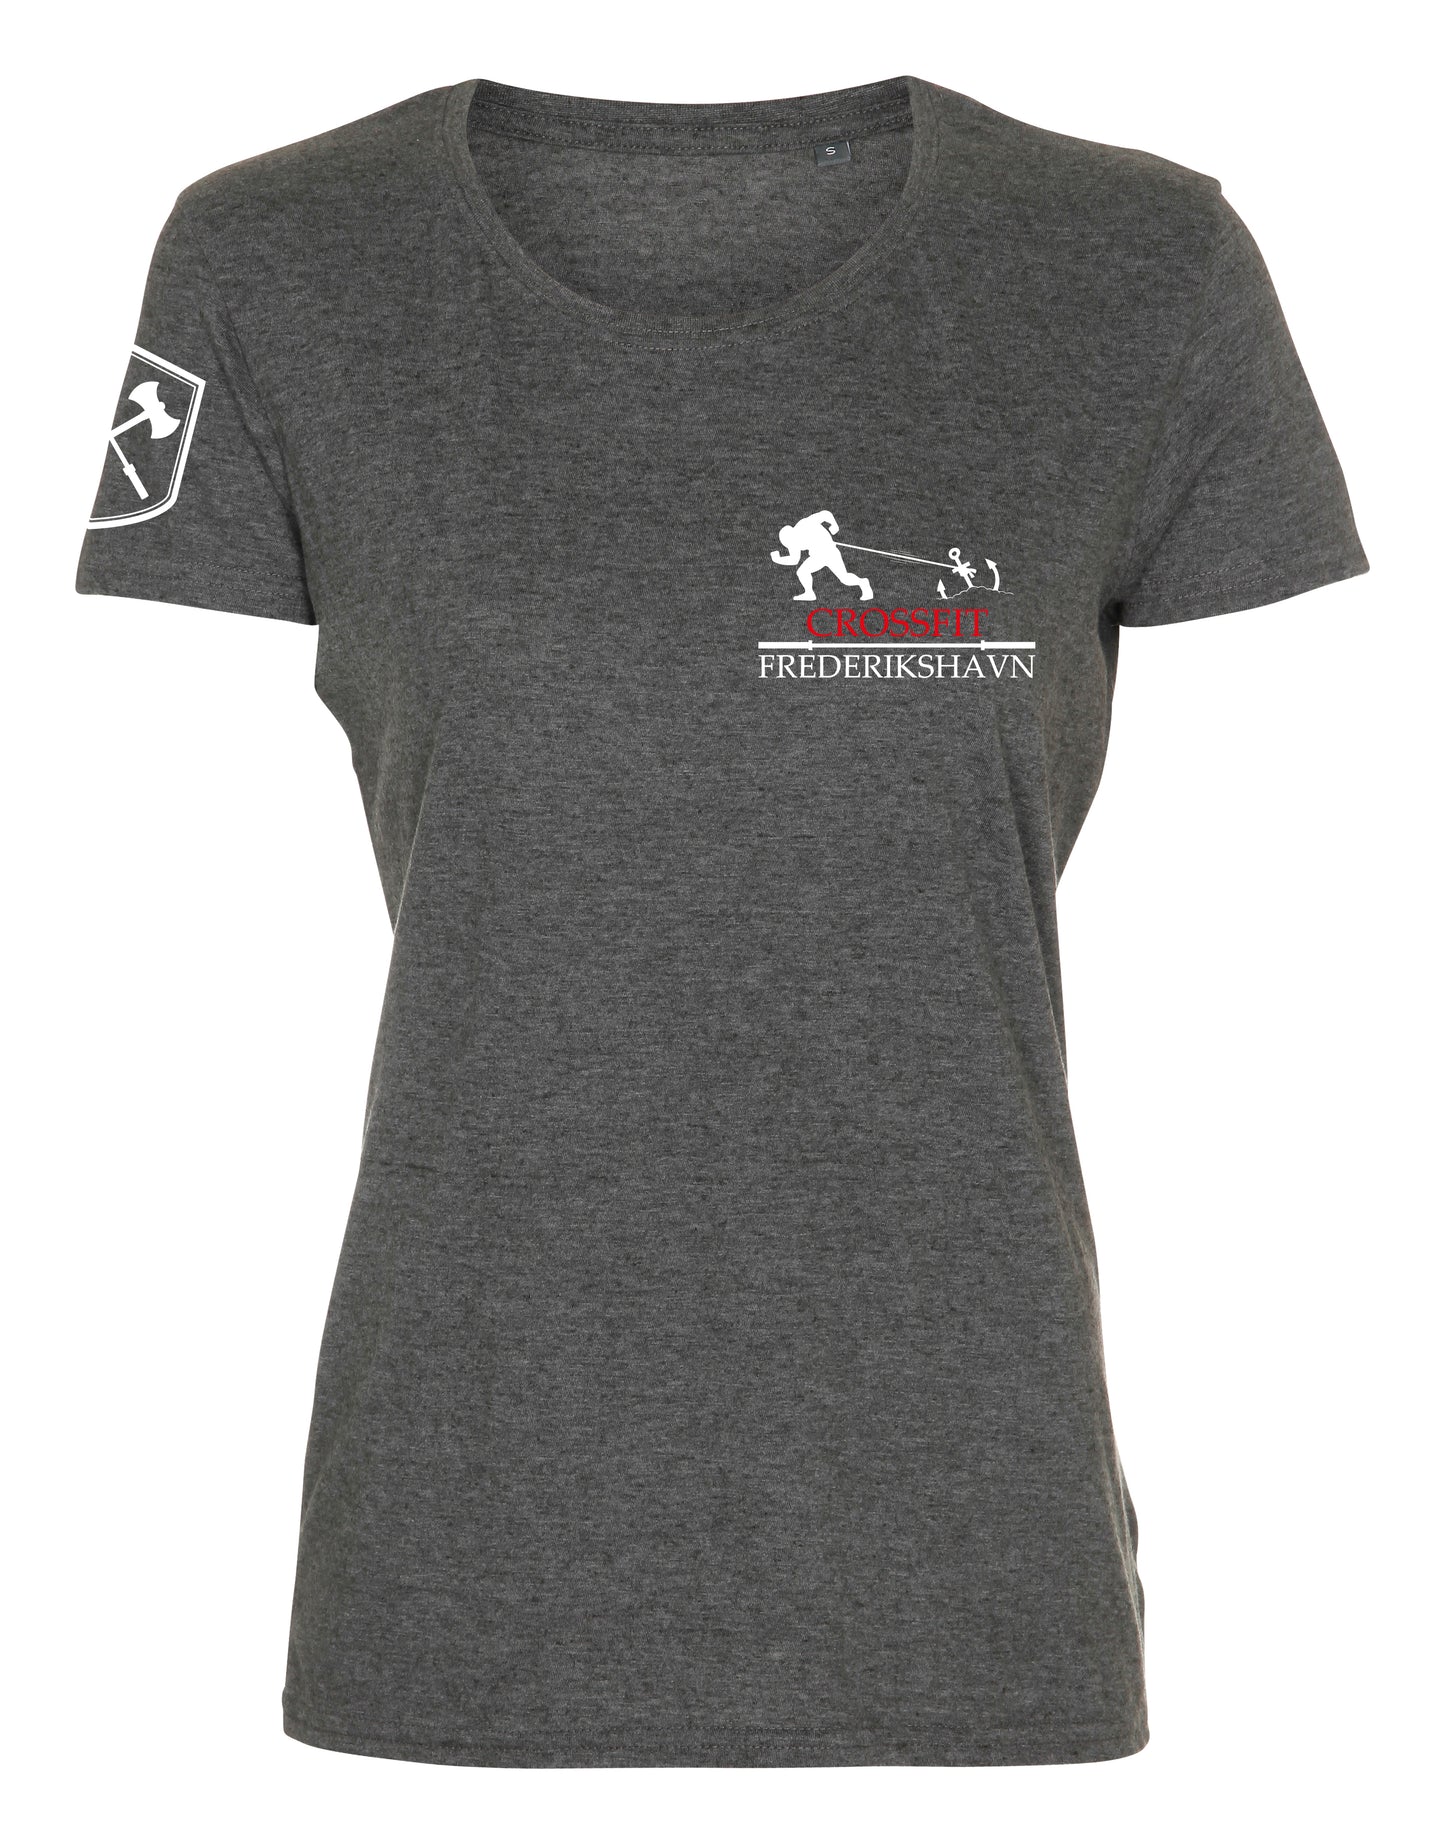 Crossfit Frederikshavn - Dame T-shirt